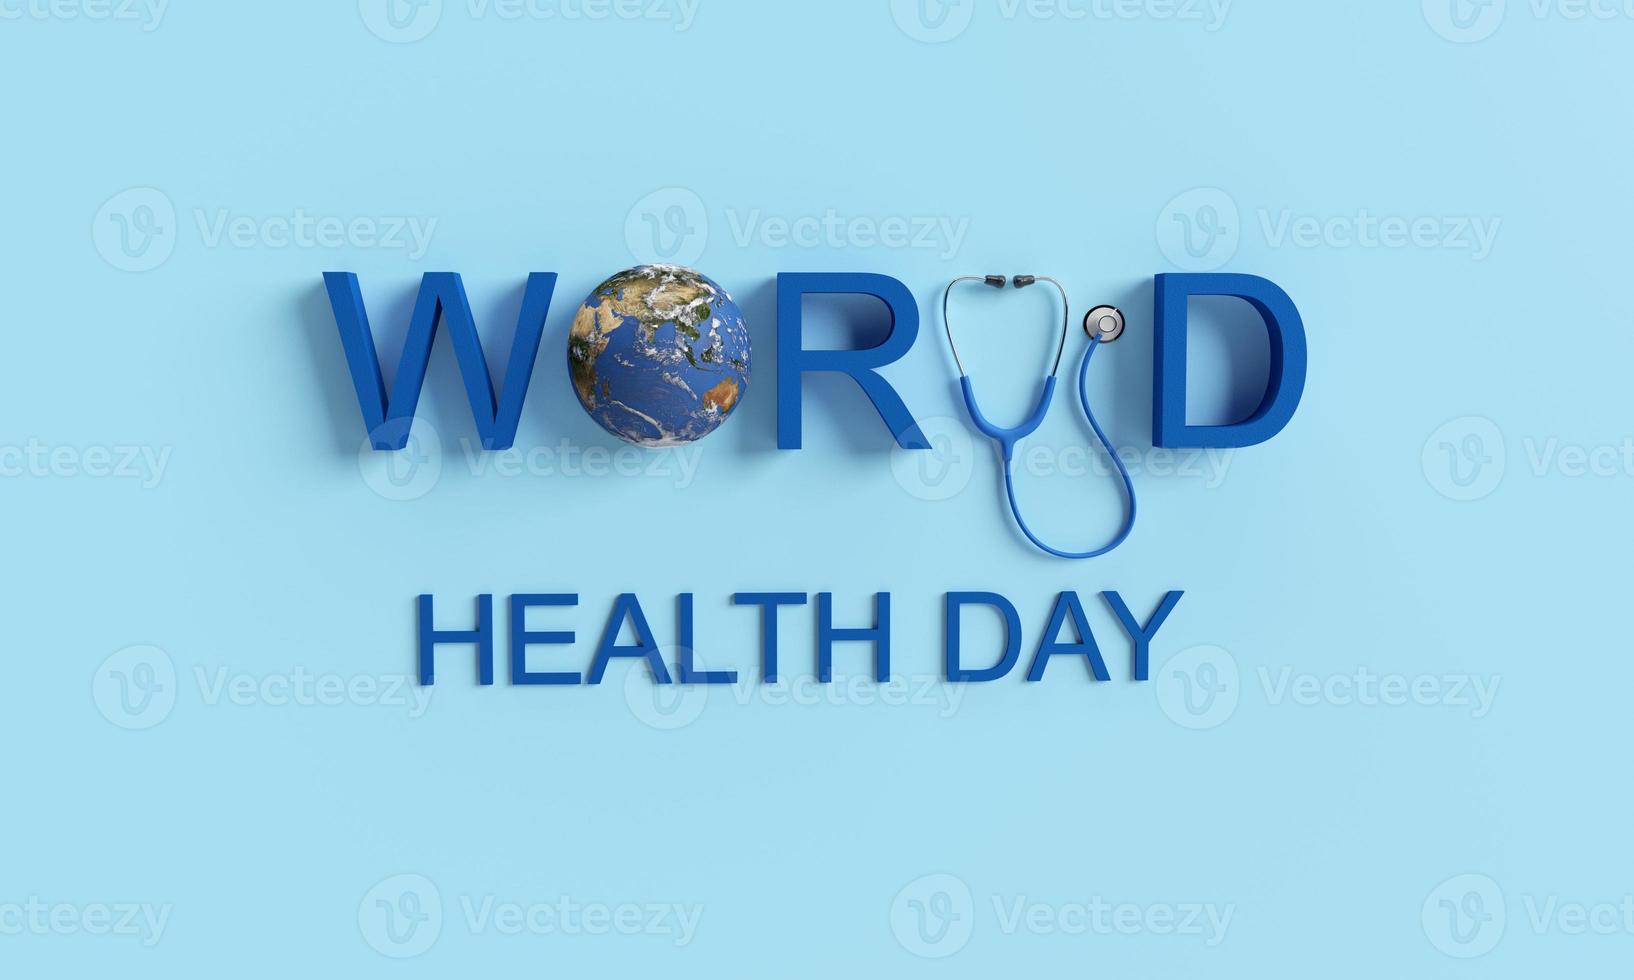 värld hälsa dag font text kalligrafi stetoskop jord värld planet global blå bakgrund tapet tecken symbol dekoration prydnad hälsa vård behandling medicinsk läkare sjuksköterska forskare wellness foto